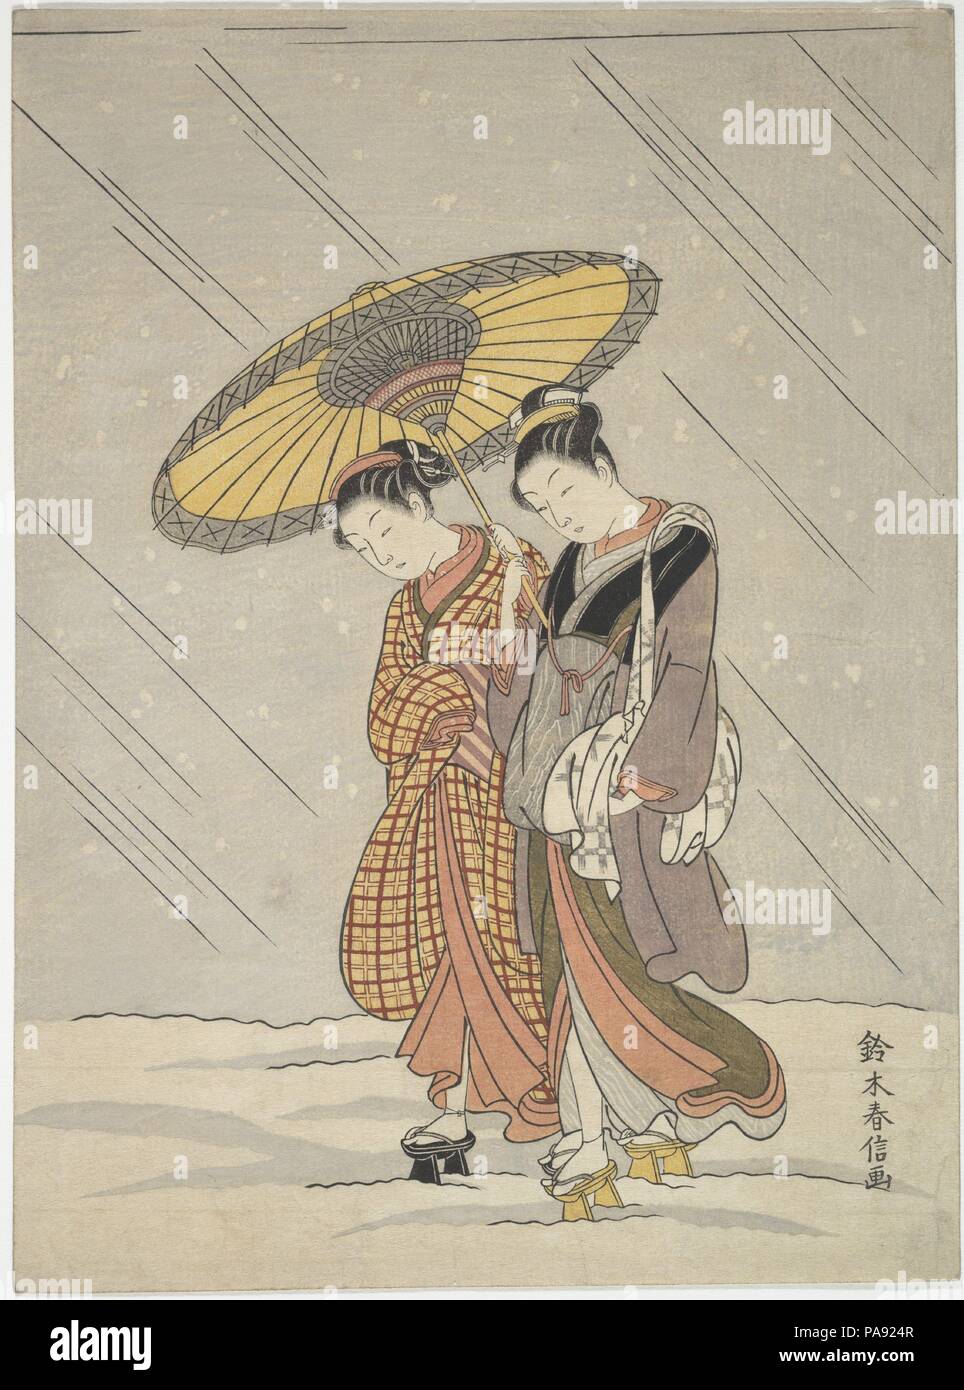 Zwei Frauen in einem Sturm. Artist: Suzuki Harunobu (Japanisch, 1725-1770). Kultur: Japan. Abmessungen: H.10 cm. (26,4 cm); W. 8 1/8 in. (20,6 cm). Datum: 1764-72. Die beiden jungen Frauen in der harunobu Drucken sind auf dem Weg zu einem Badehaus im Regen. Die Frau vor trägt einen Bademantel und ein Handtuch, ein wichtiger Anhaltspunkt, wohin Sie gehen. Harunobu erhöht häufig die erzählerische Qualität seiner Arbeit mit solch einer humorvollen Note. Museum: Metropolitan Museum of Art, New York, USA. Stockfoto